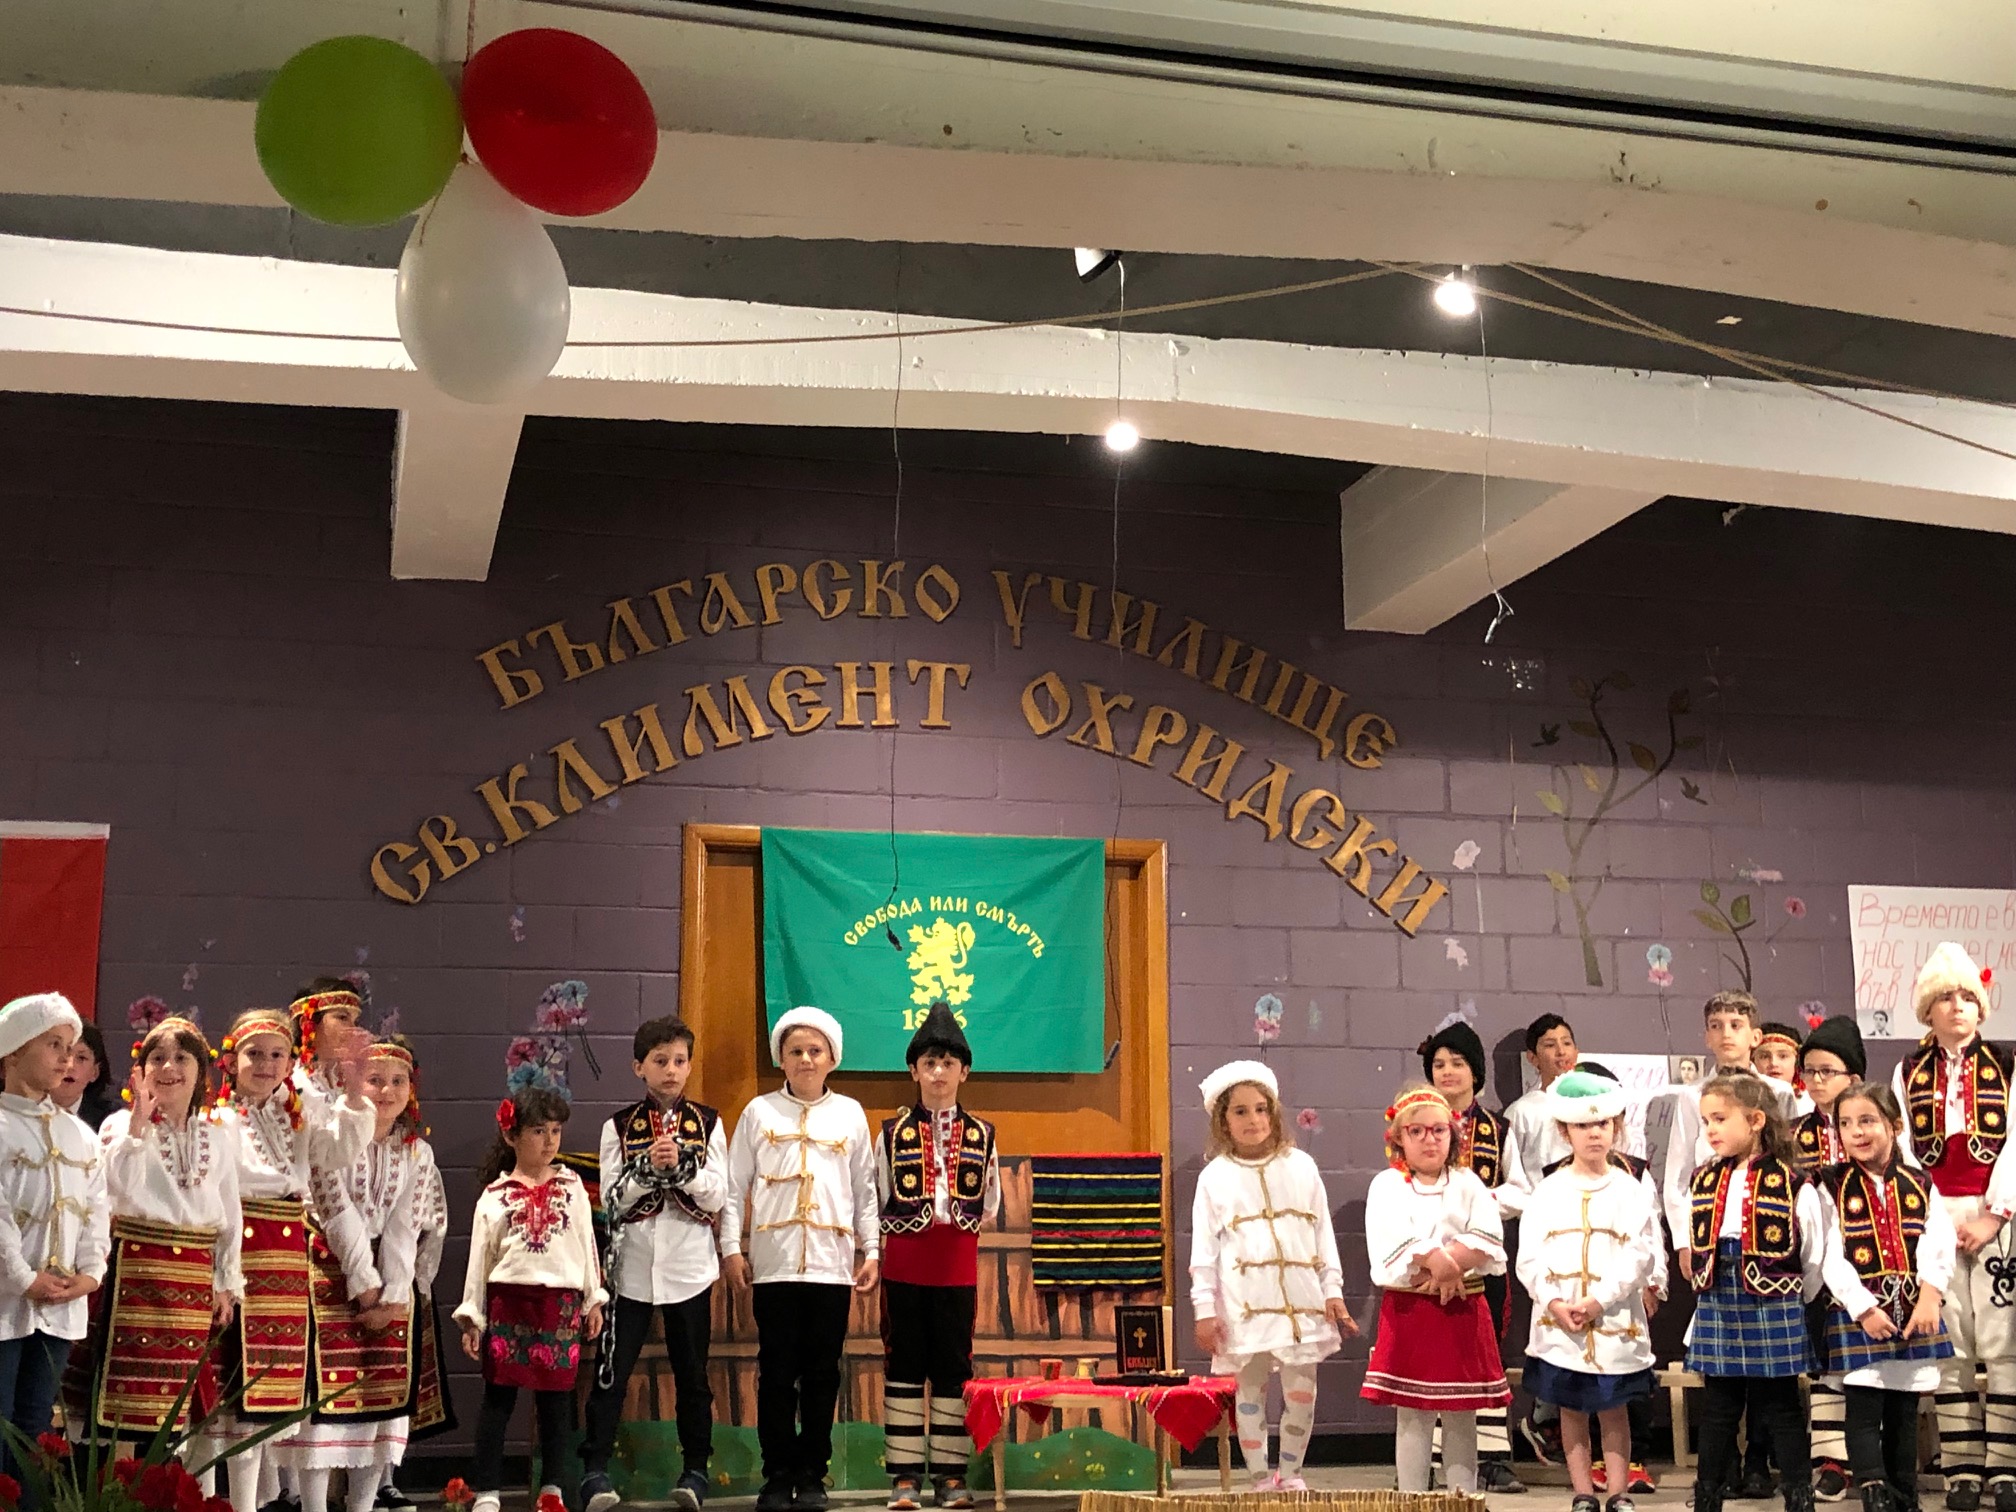  Тържество по случай празника 24 май в българското училище "Св. Климент Охридски" в гр. Монреал, Канада